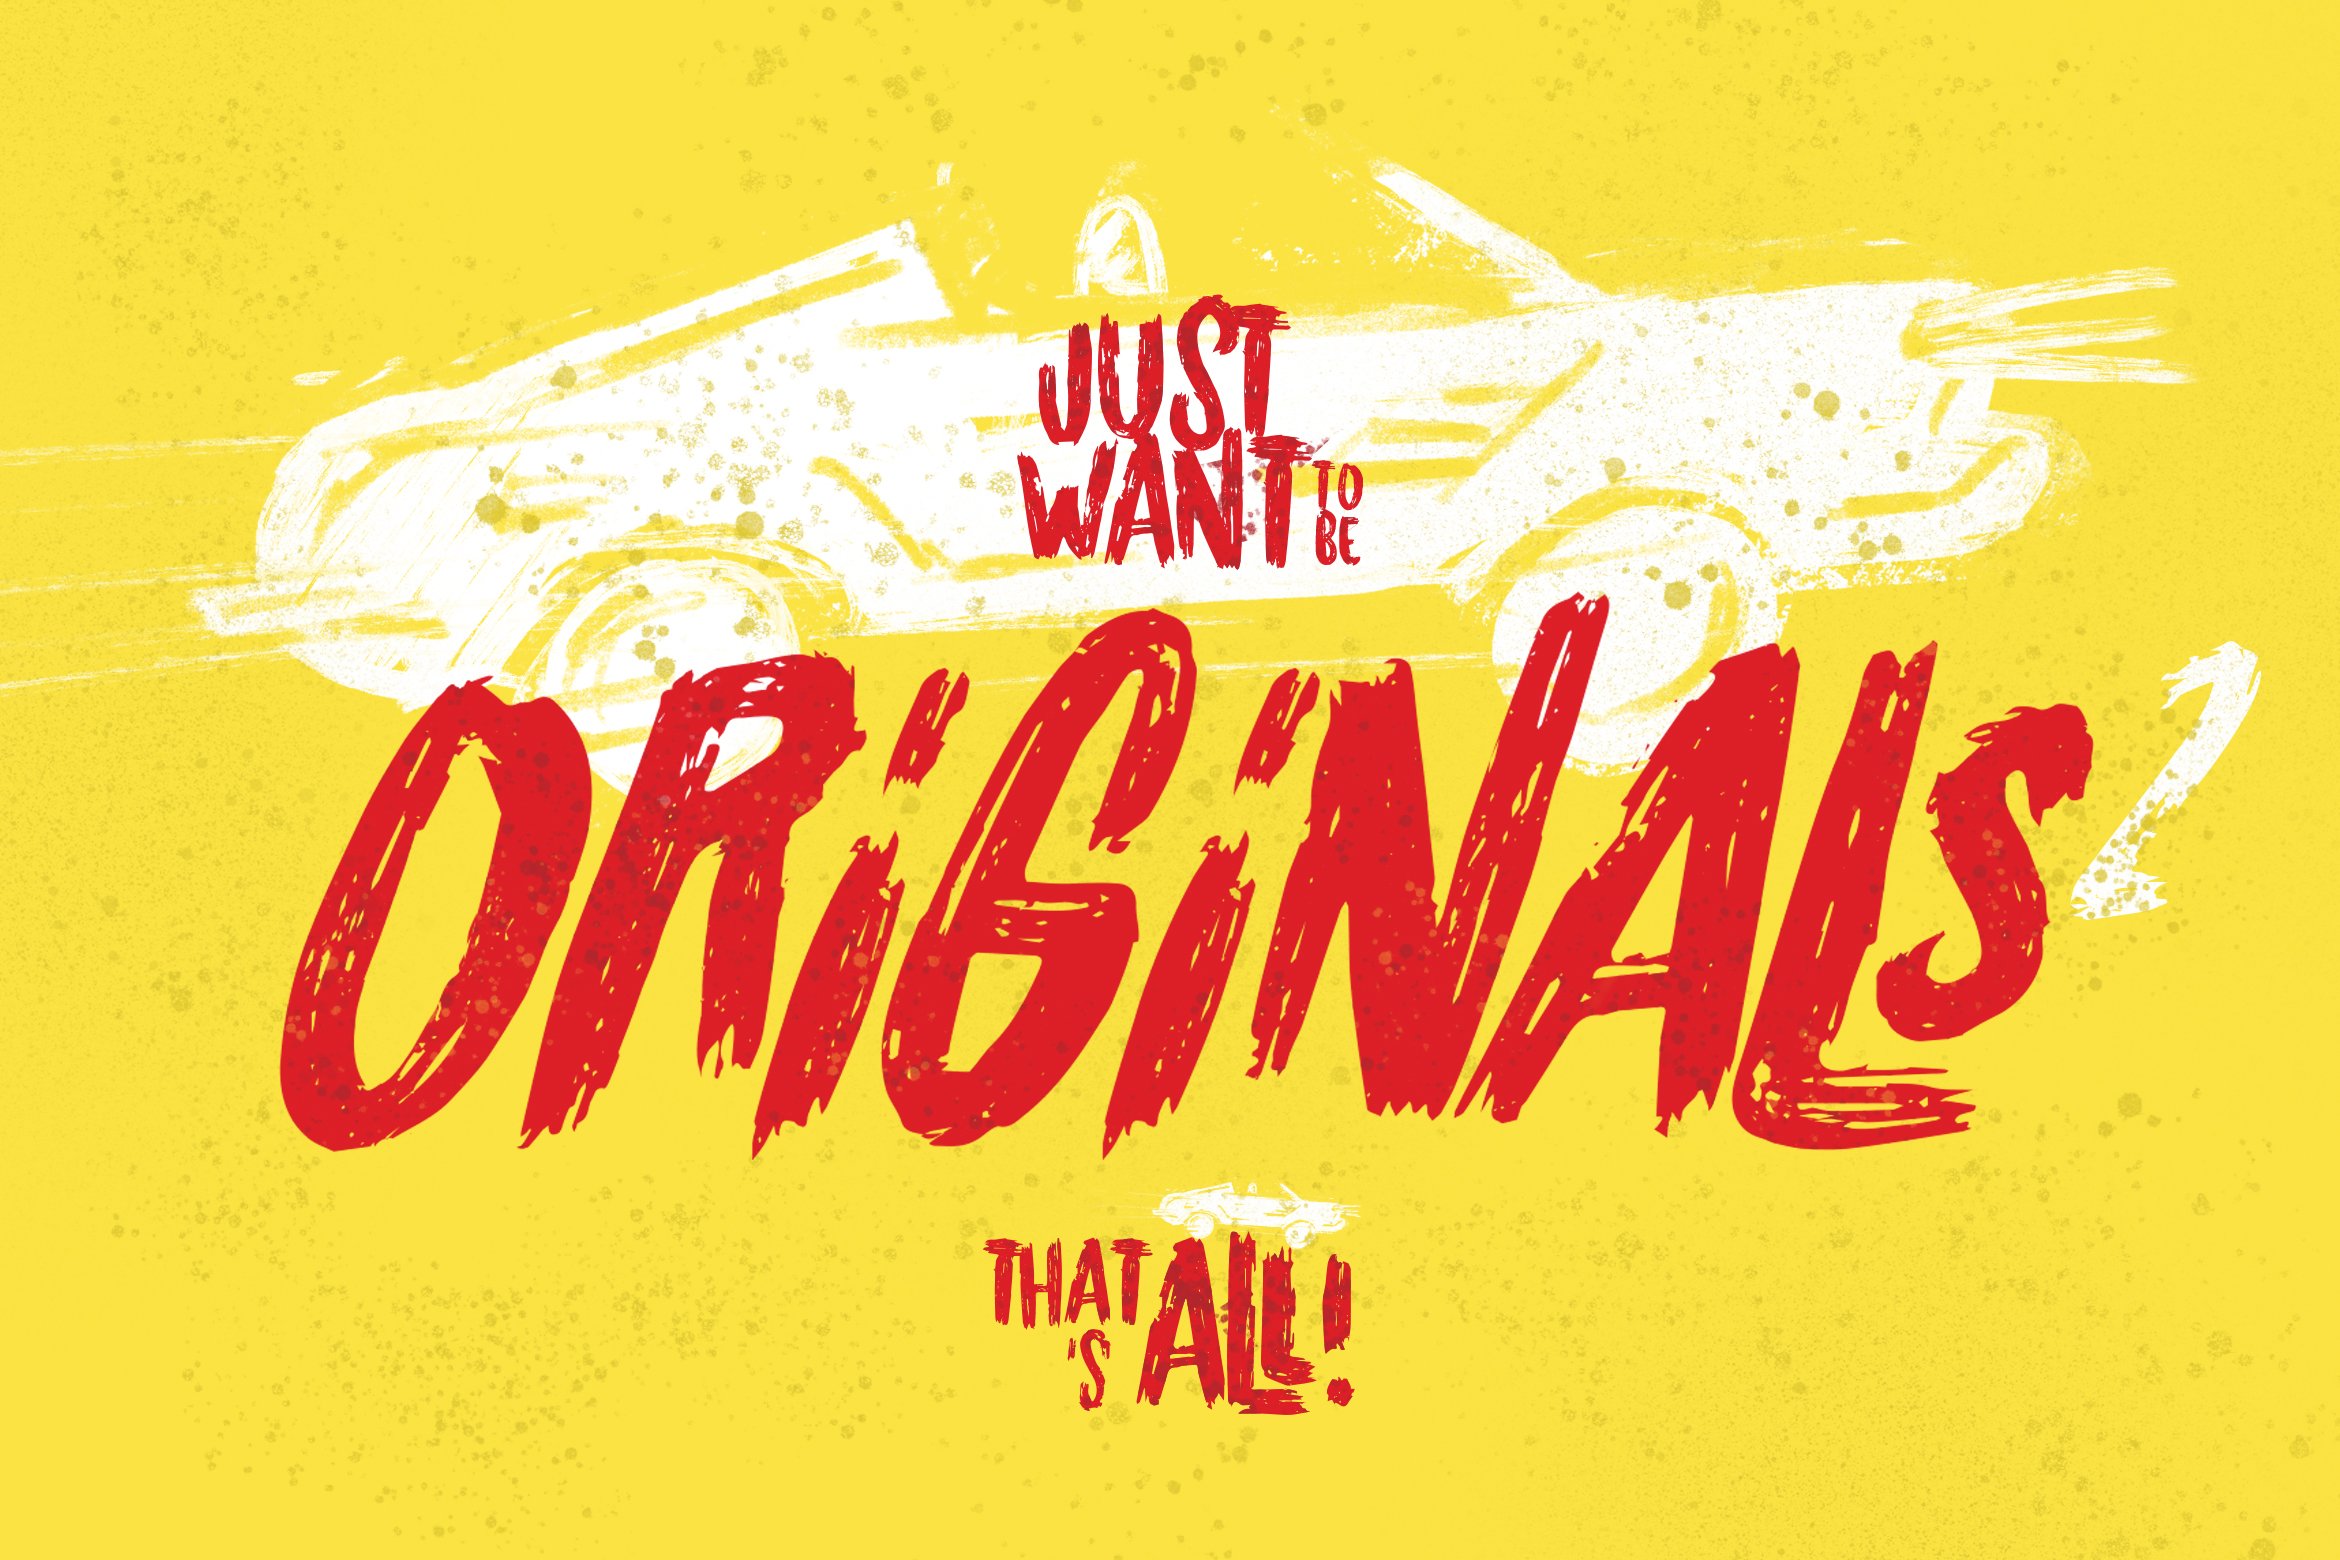 Originals 2 Typeface cover image.